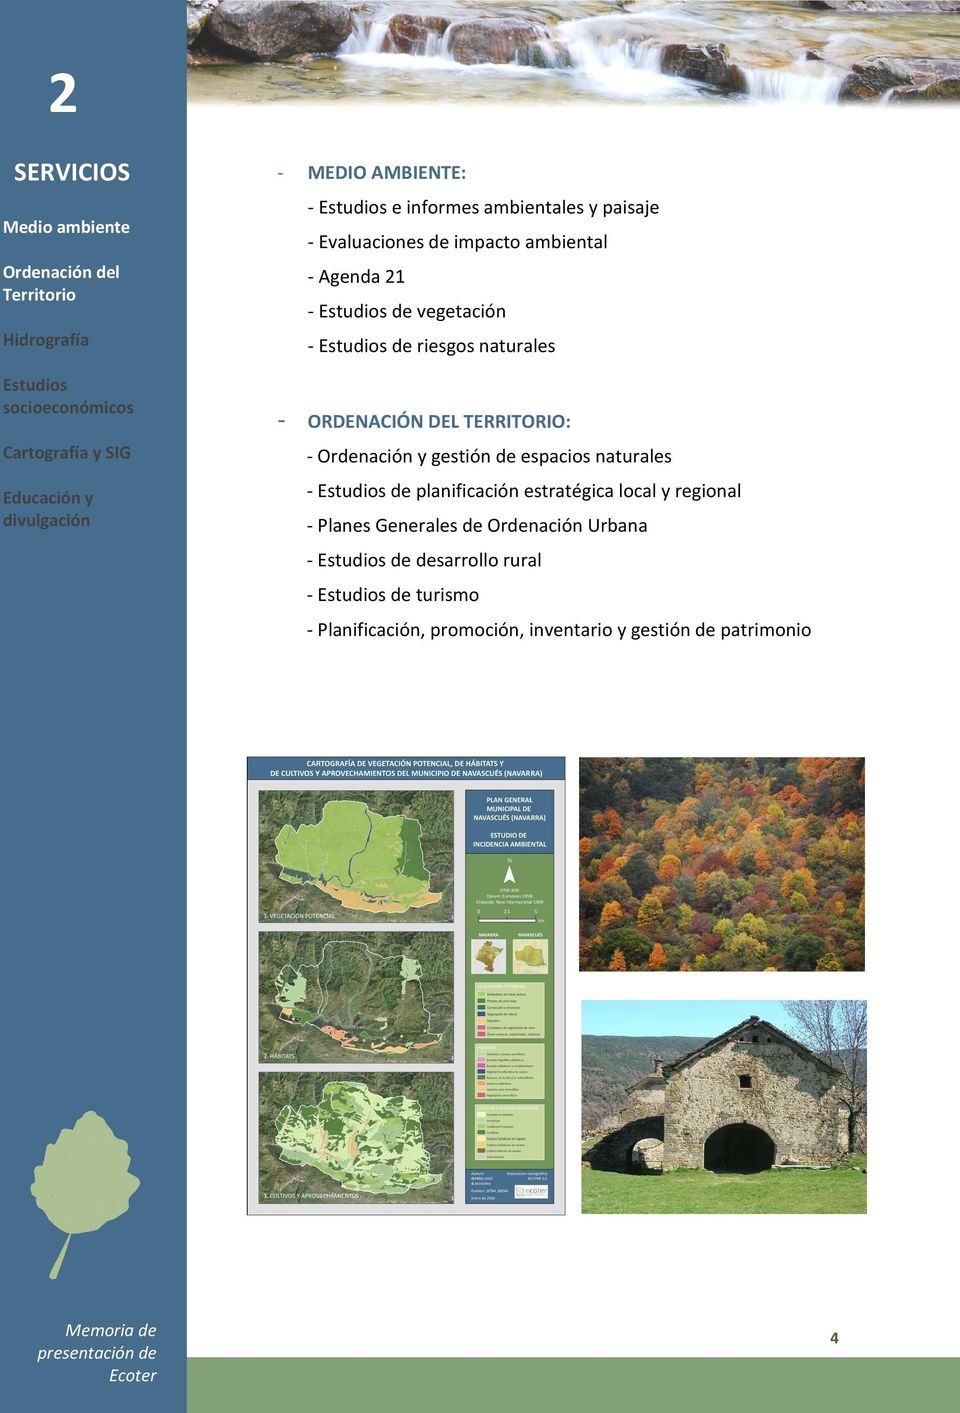 Cartografía y SIG - Ordenación y gestión de espacios naturales Educación y divulgación - Estudios de planificación estratégica local y regional -